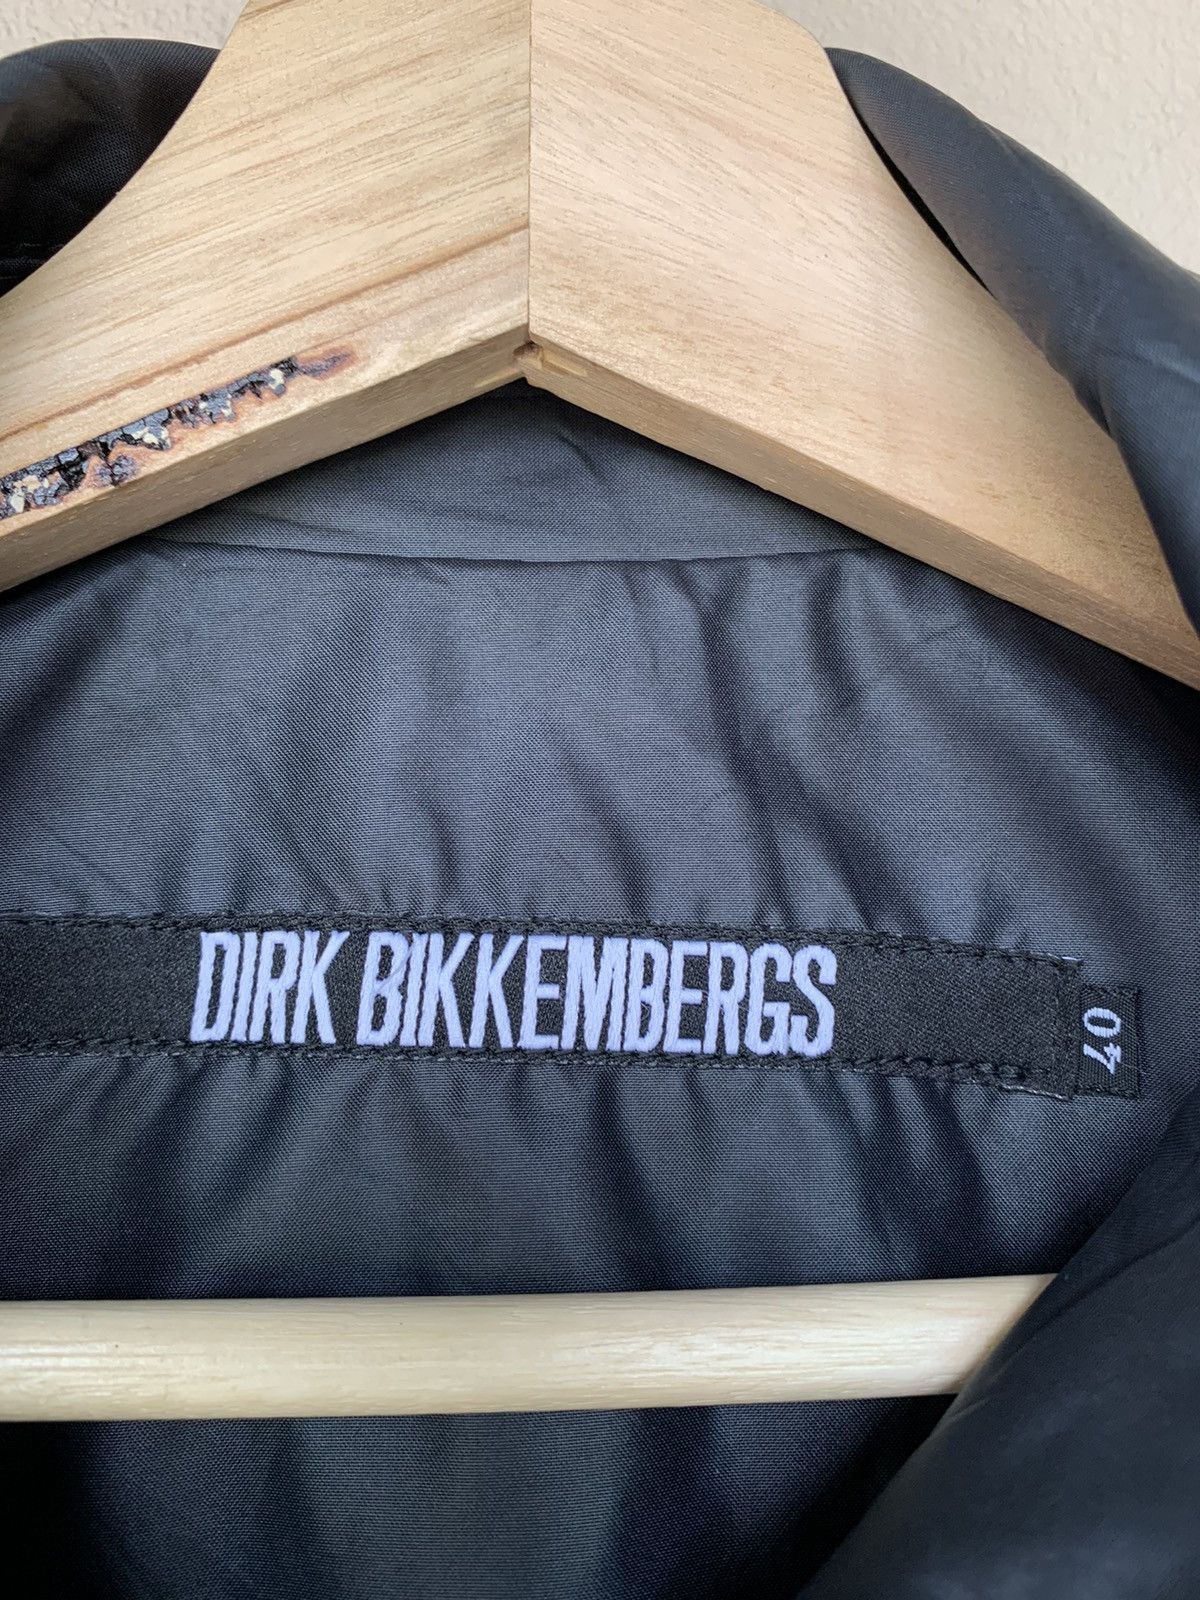 🔥HOT ITEM DIRK BIKKEMBERGS OVERCOATS - 14